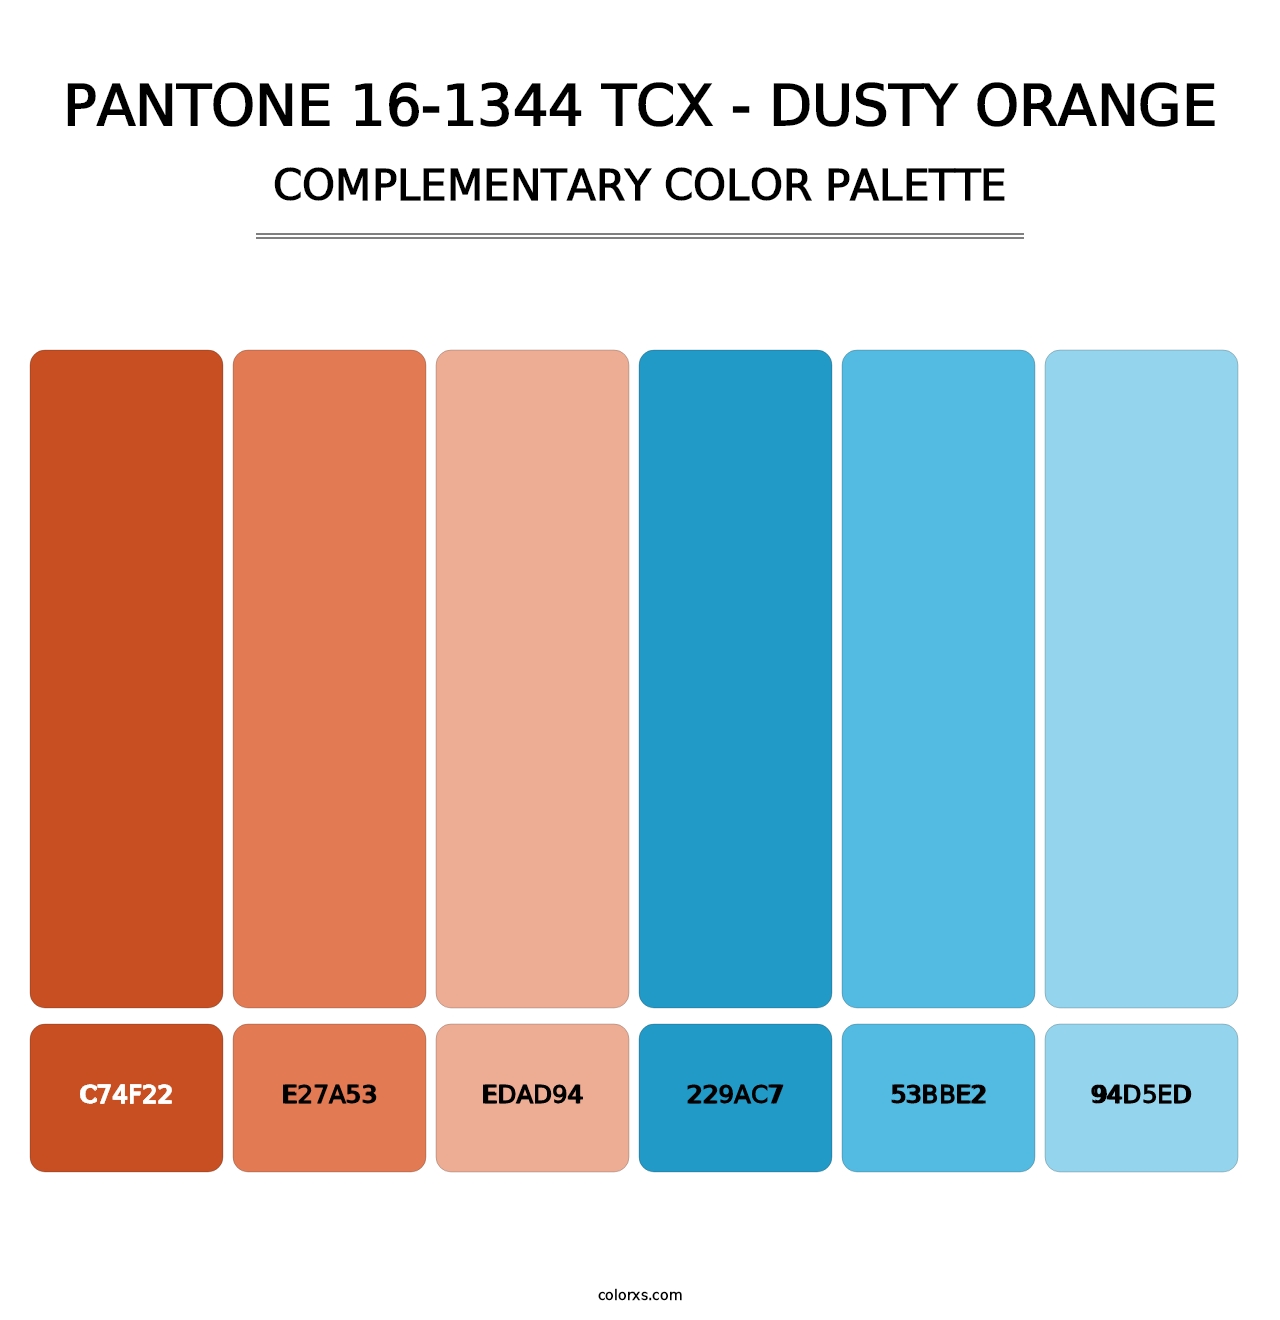 PANTONE 16-1344 TCX - Dusty Orange - Complementary Color Palette